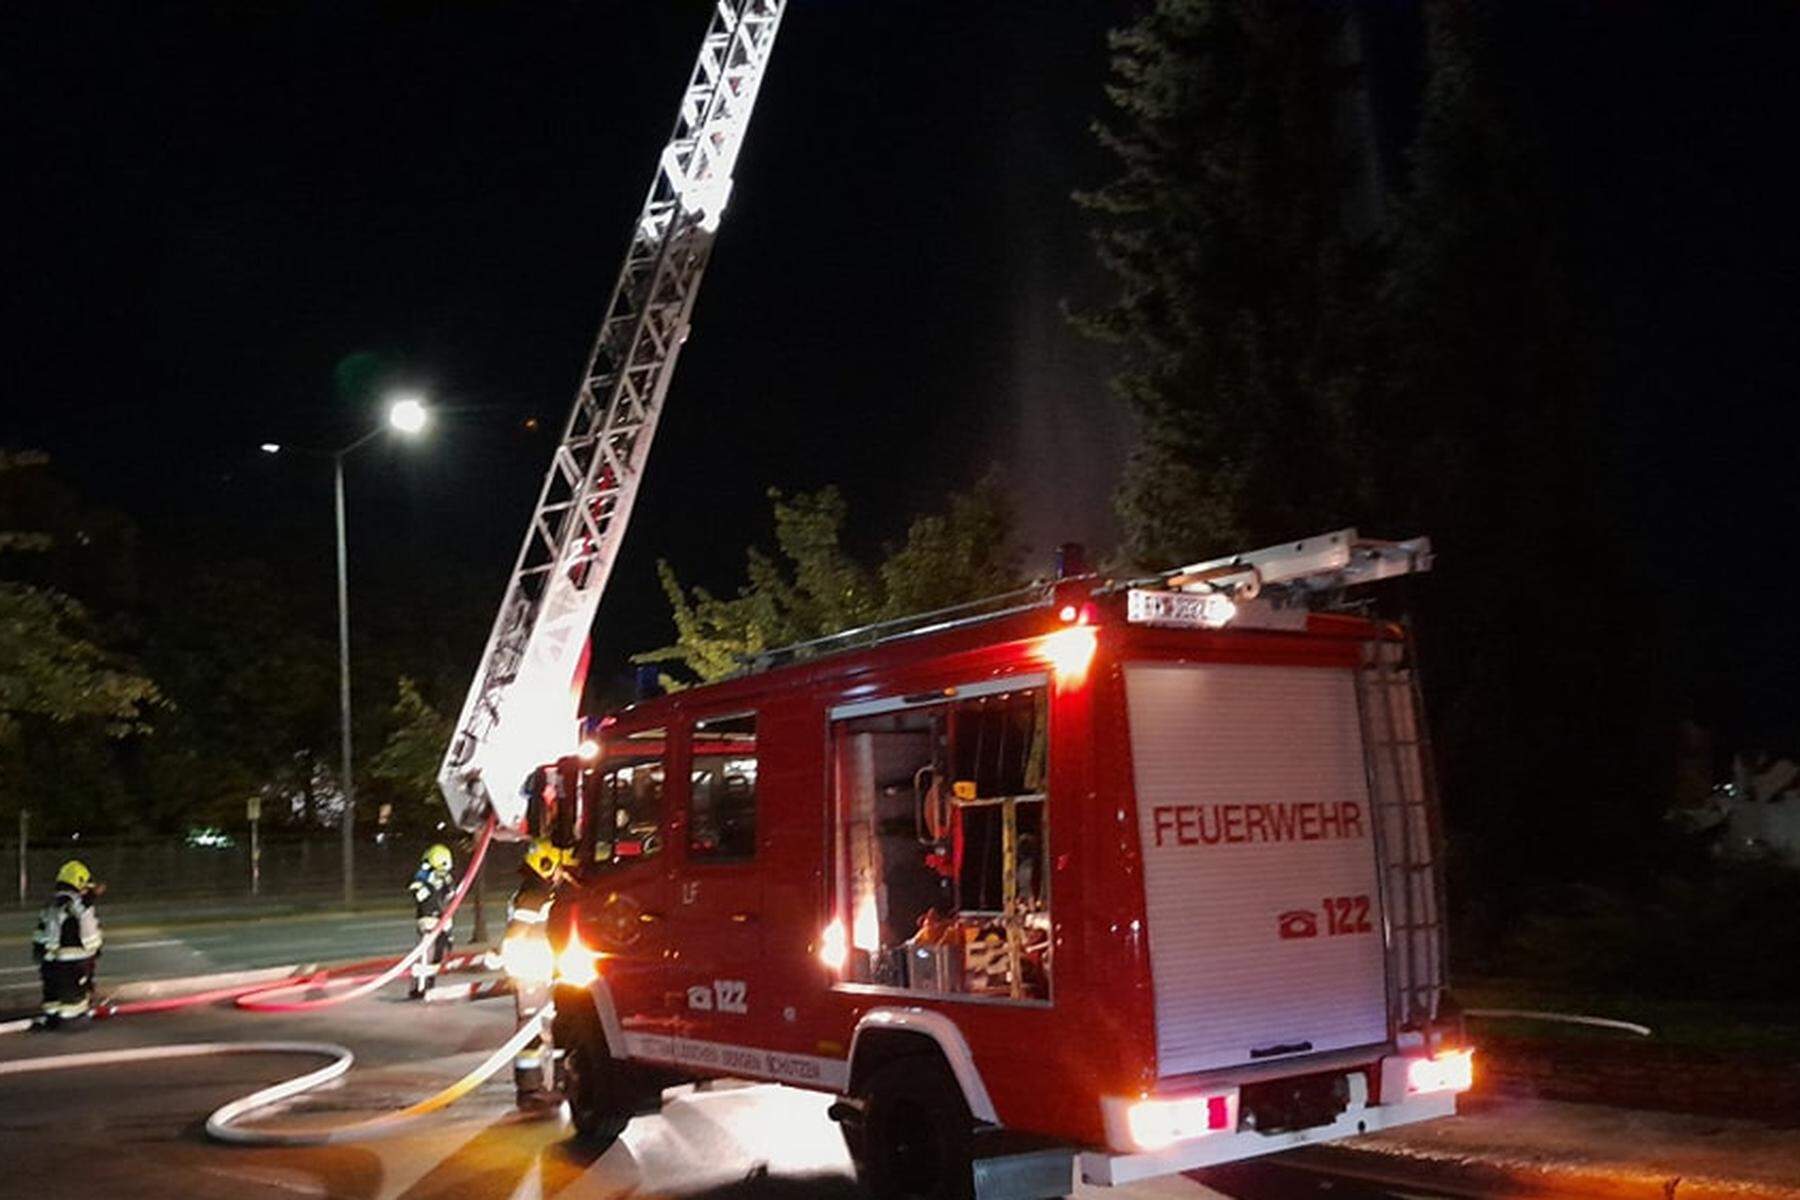 15-Jährige aus Leoben im Spital | Teelichter lösten Brand in Haus in Leoben aus